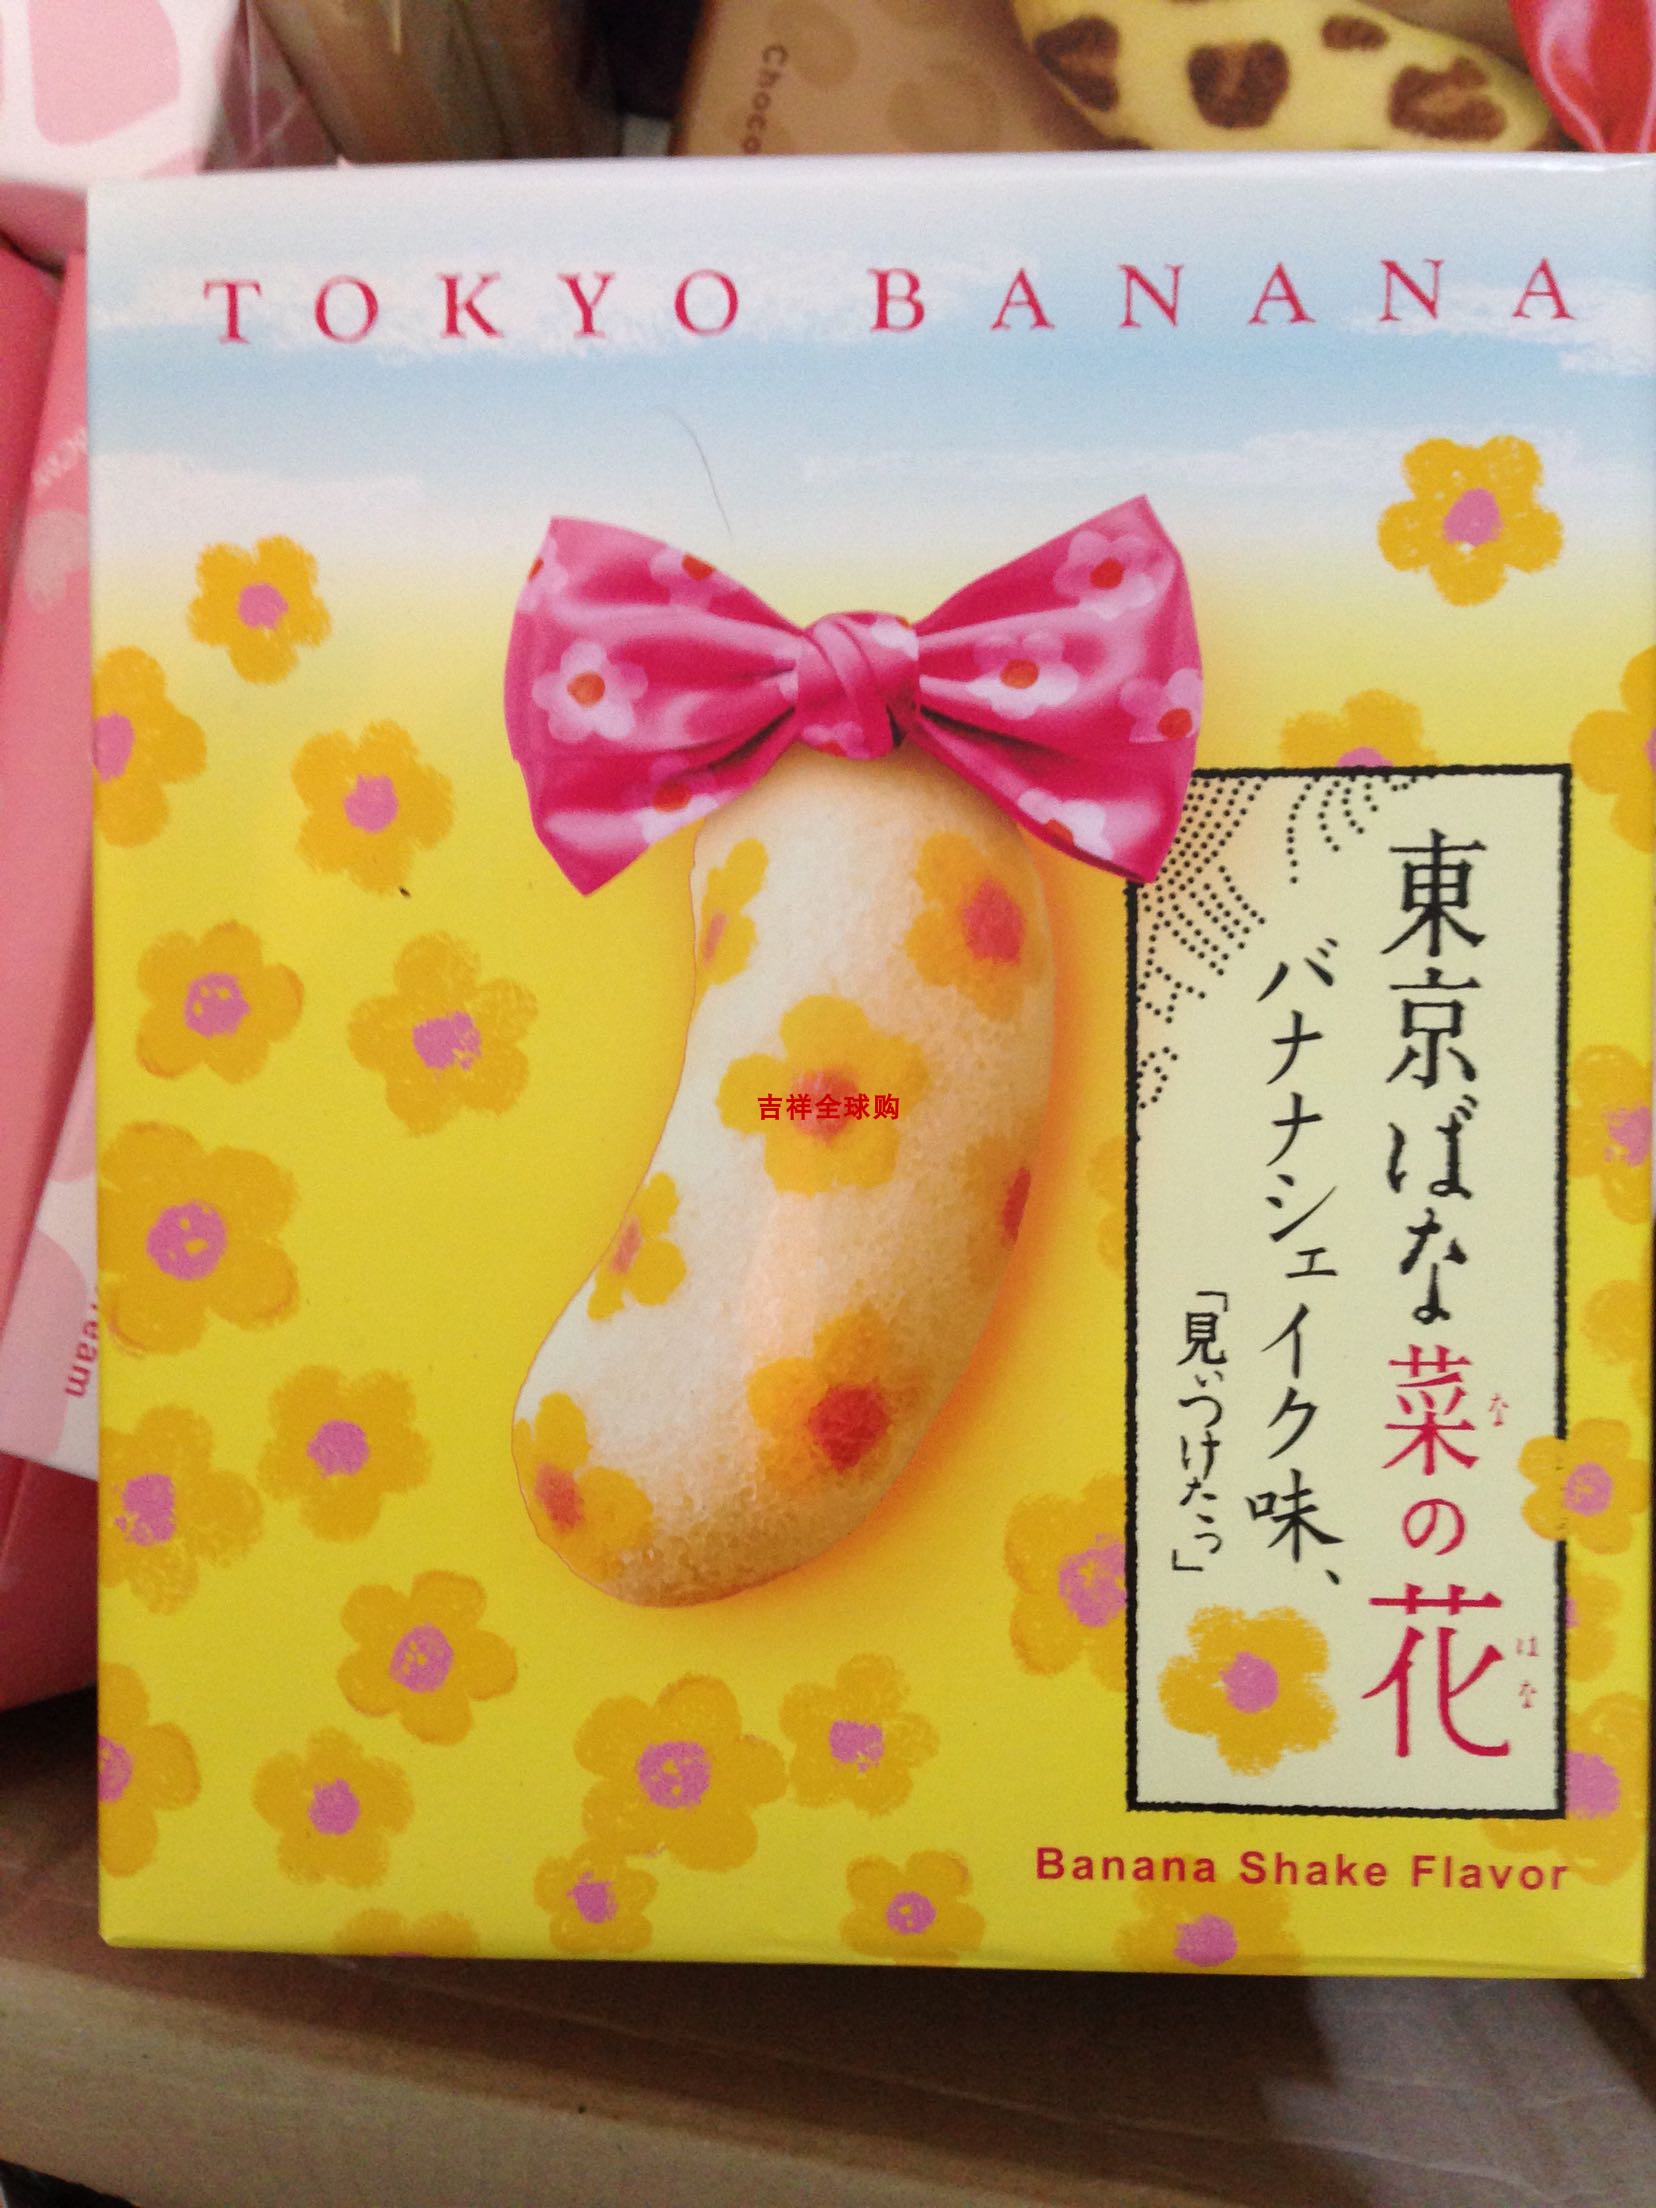 日本香蕉蛋糕 tokyo banana 菜の花 花朵纹蛋糕 8枚